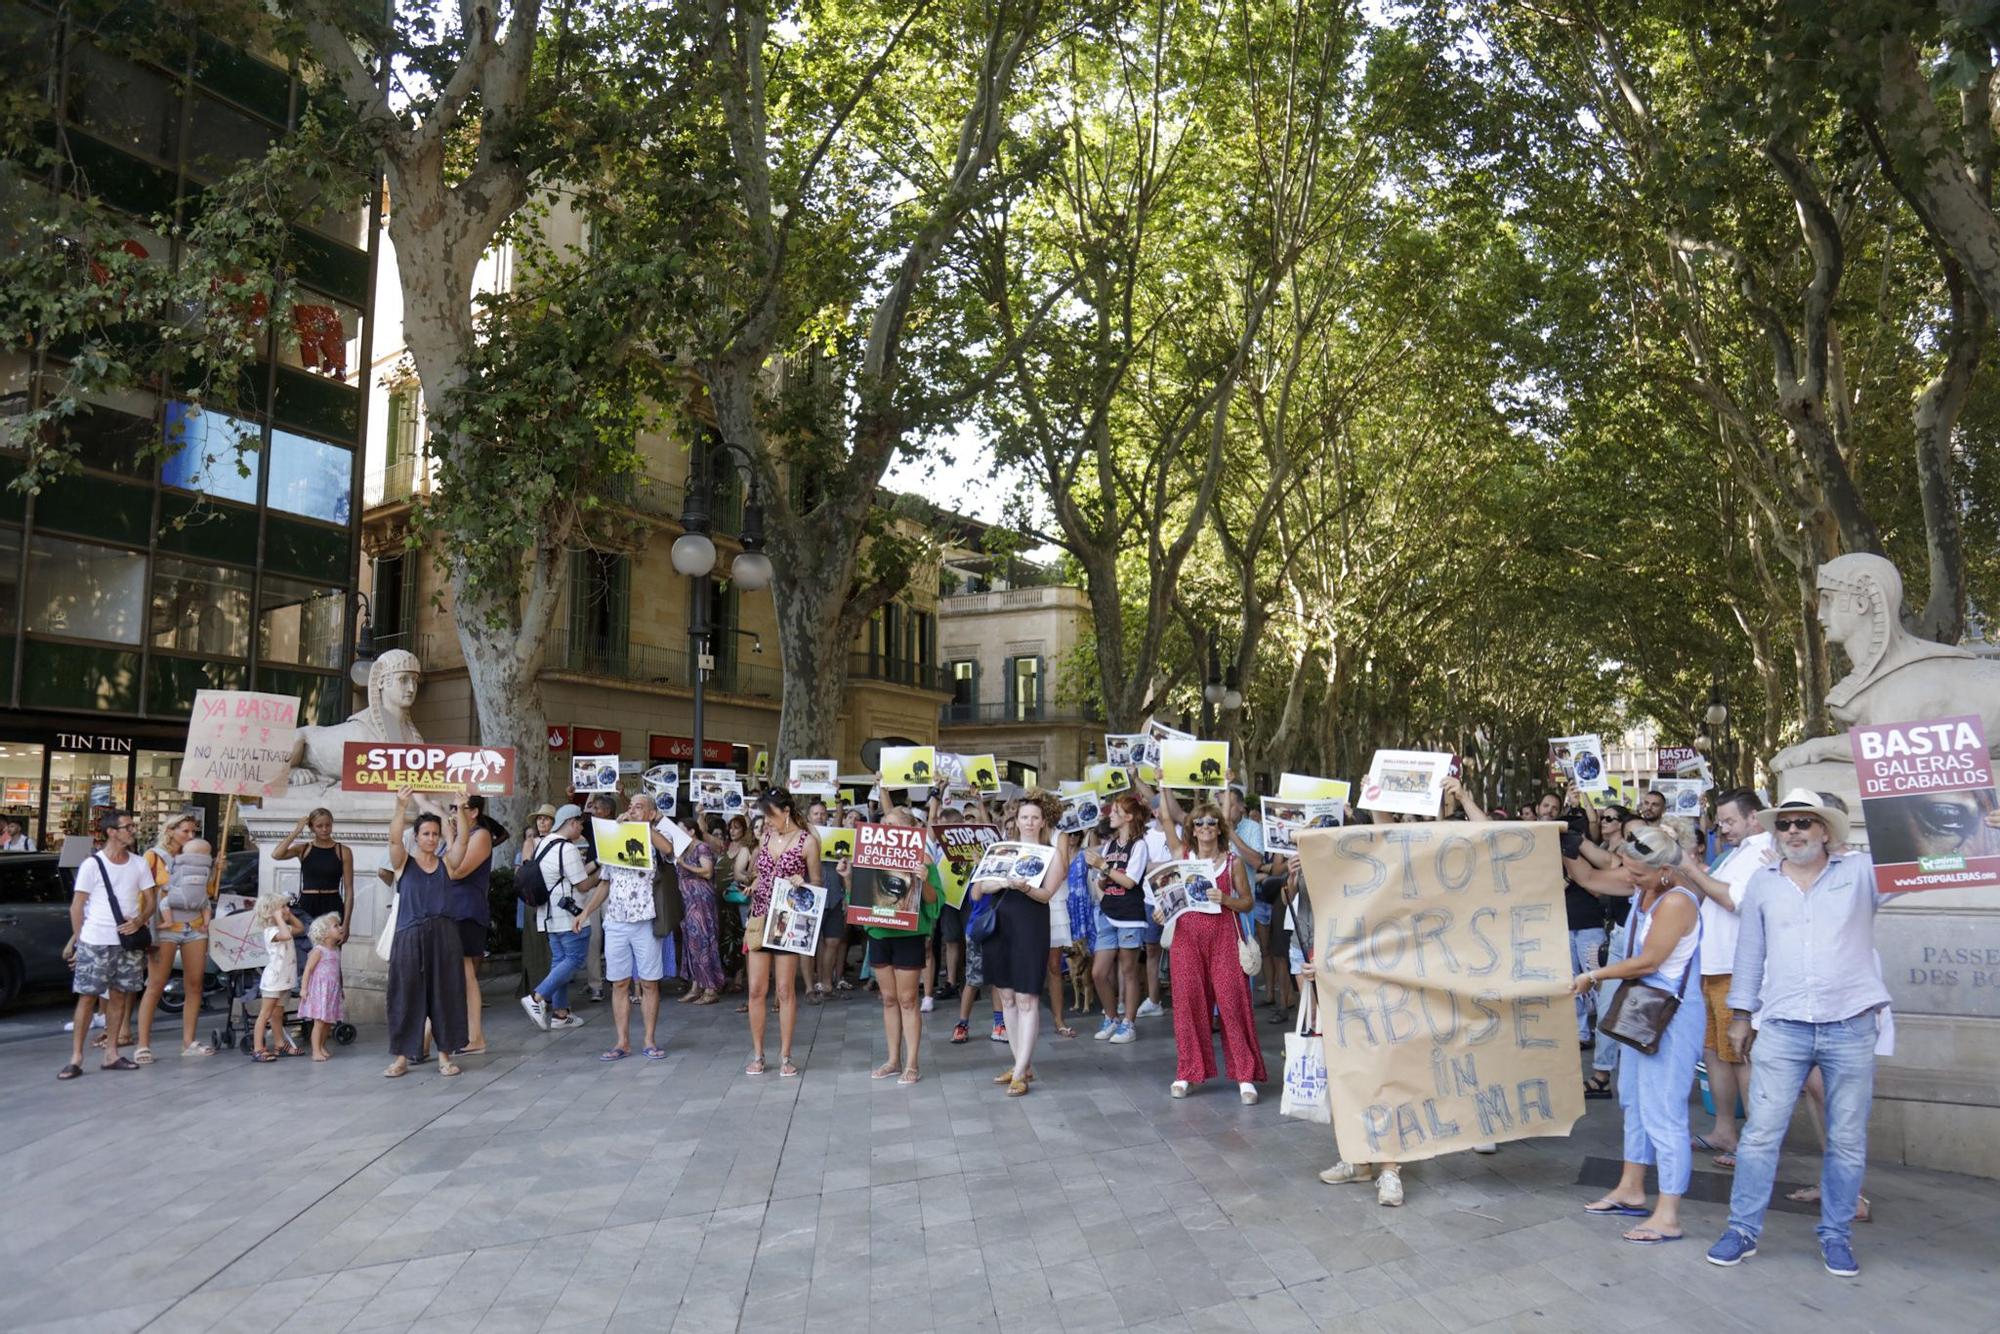 Cientos de personas exigen en Palma "el fin de la explotación de los caballos de galeras"